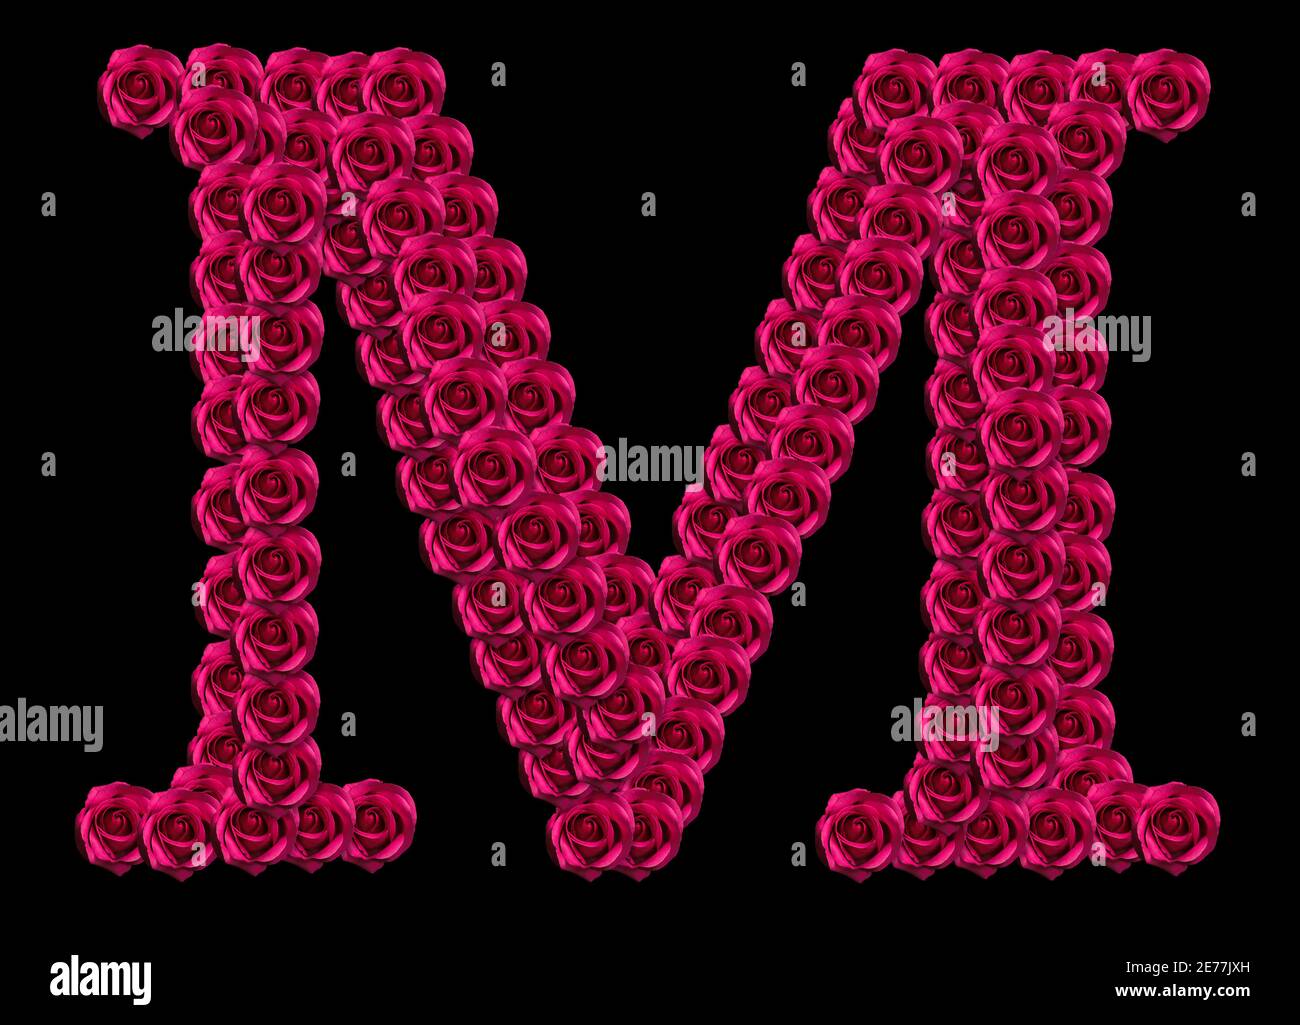 Romantique concept image d'une lettre majuscule M fait de roses rouges. Isolé sur fond noir. Élément de conception pour l'amour ou les thèmes de Saint-Valentin Banque D'Images